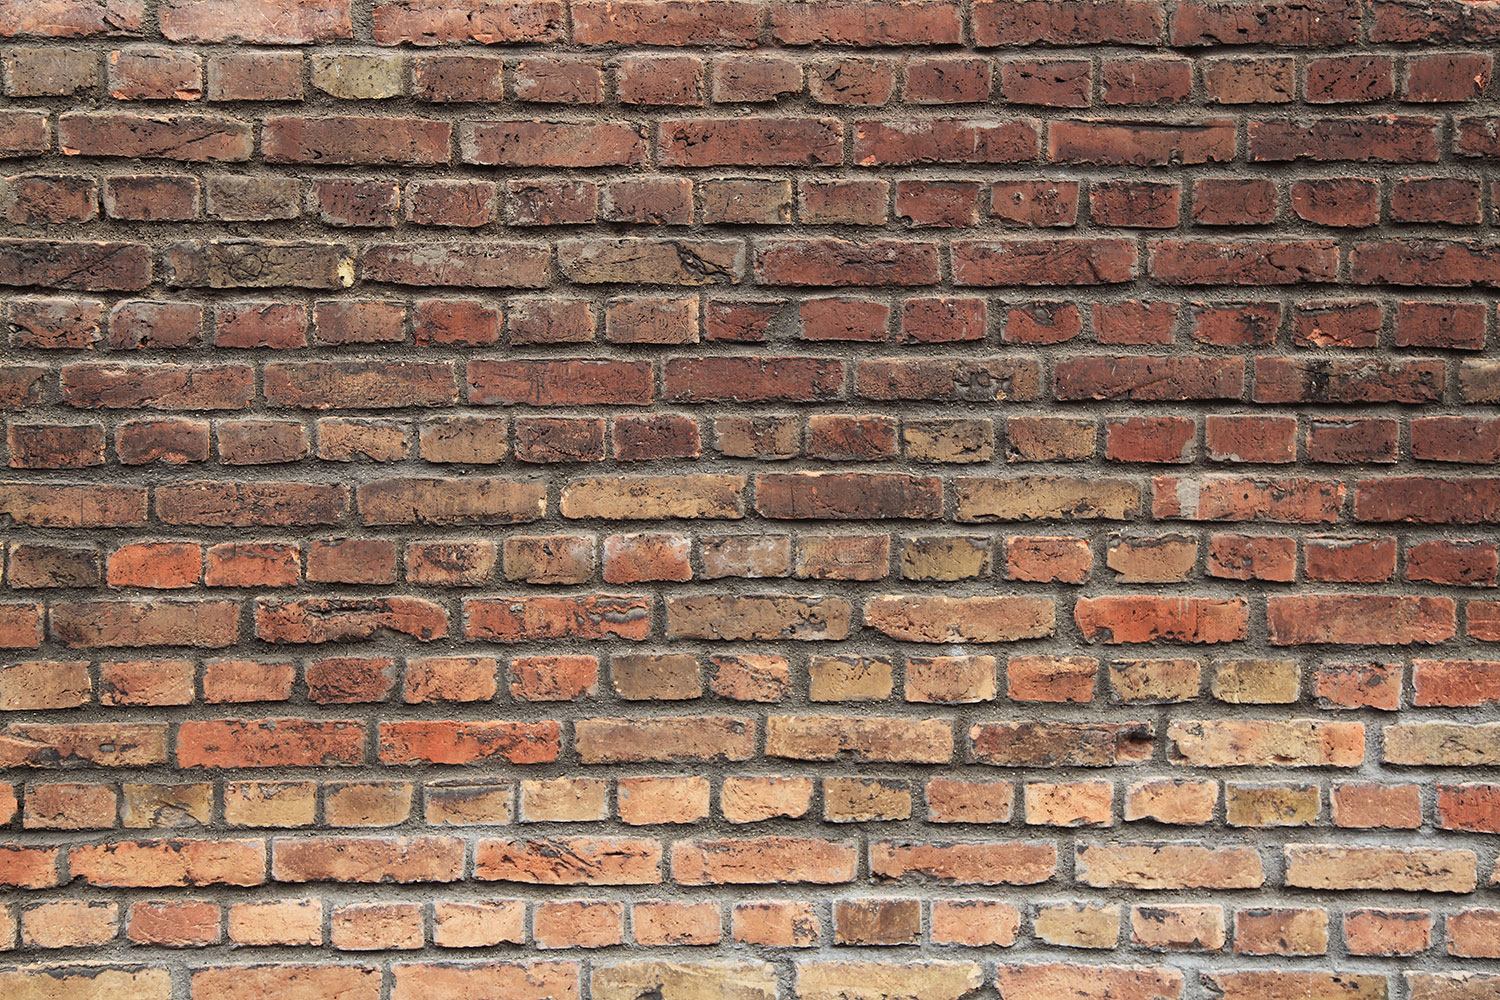 brown brick wallpaper,brickwork,brick,wall,stone wall,bricklayer